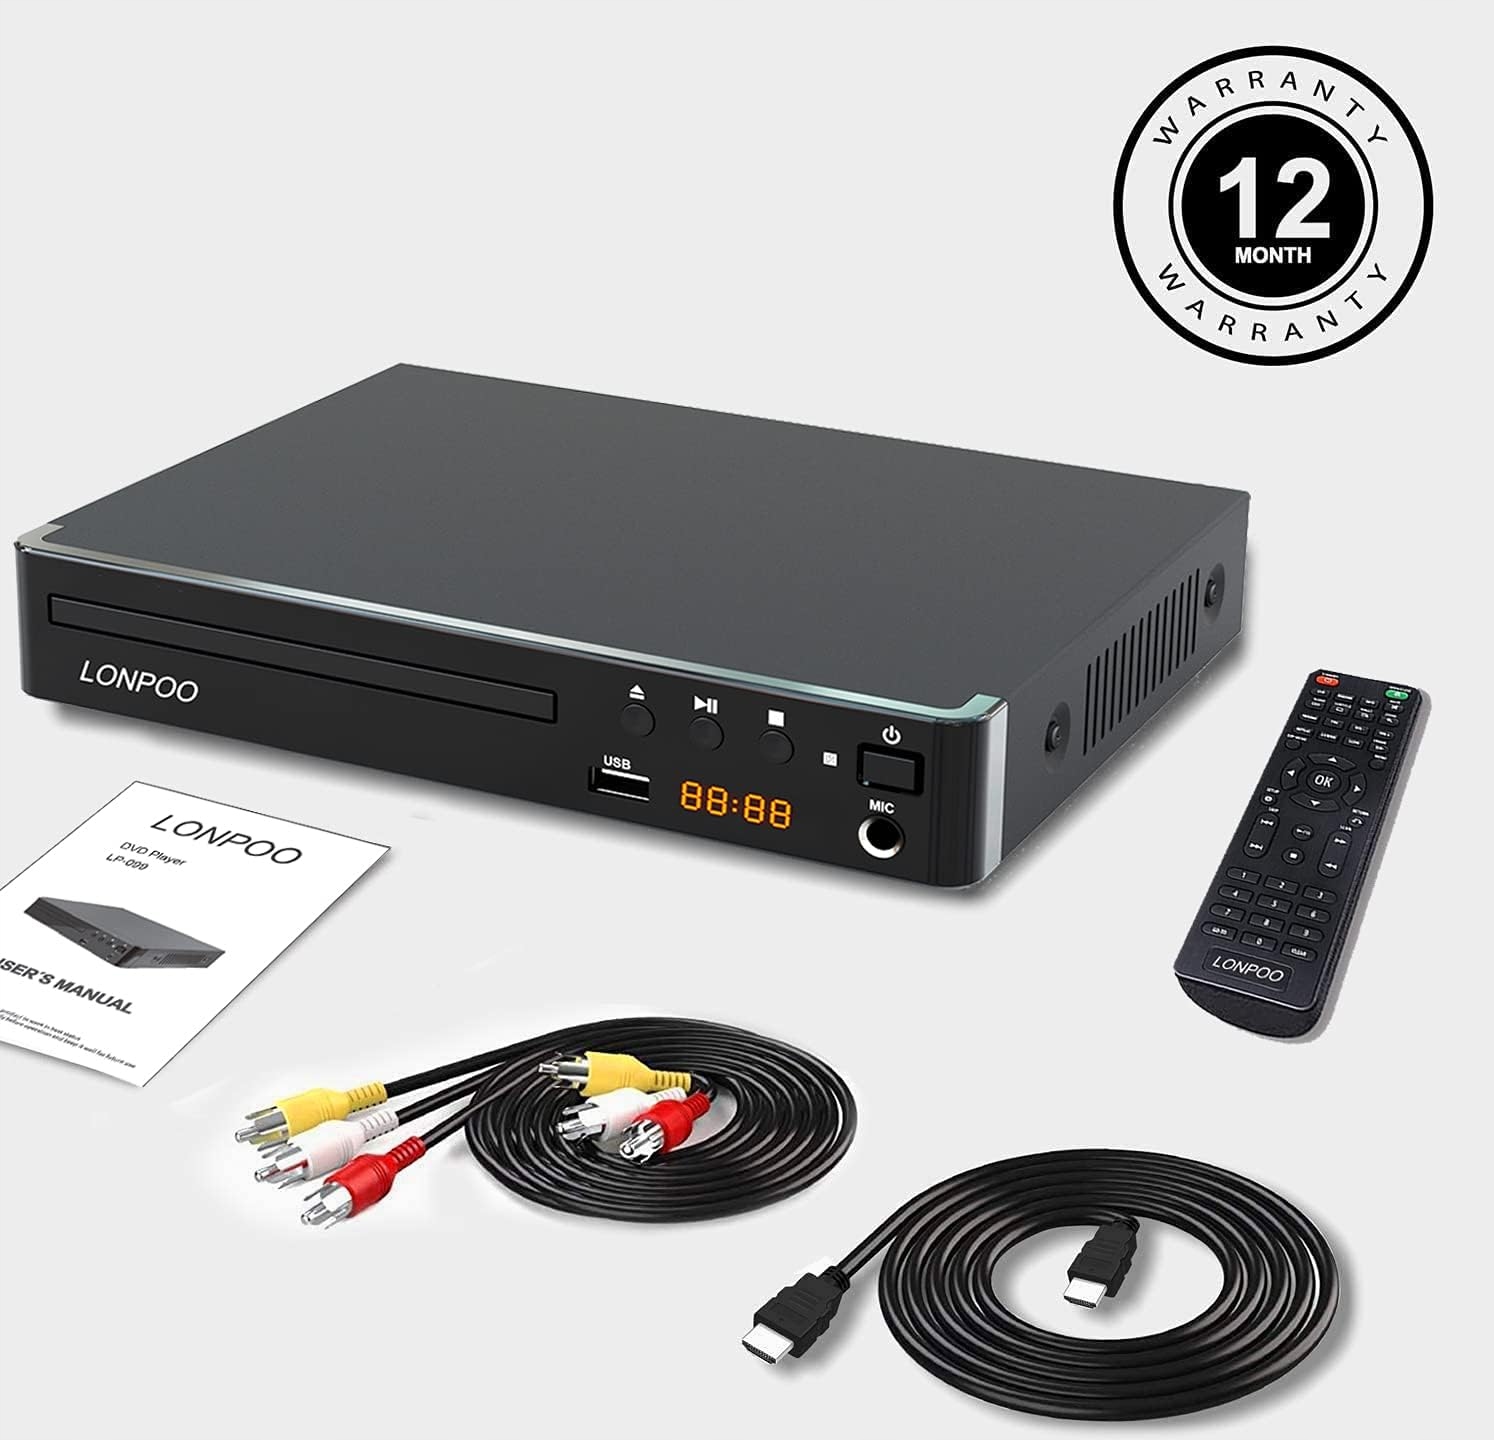 Lonpoo LP-099-hdmi DVD přehrávač